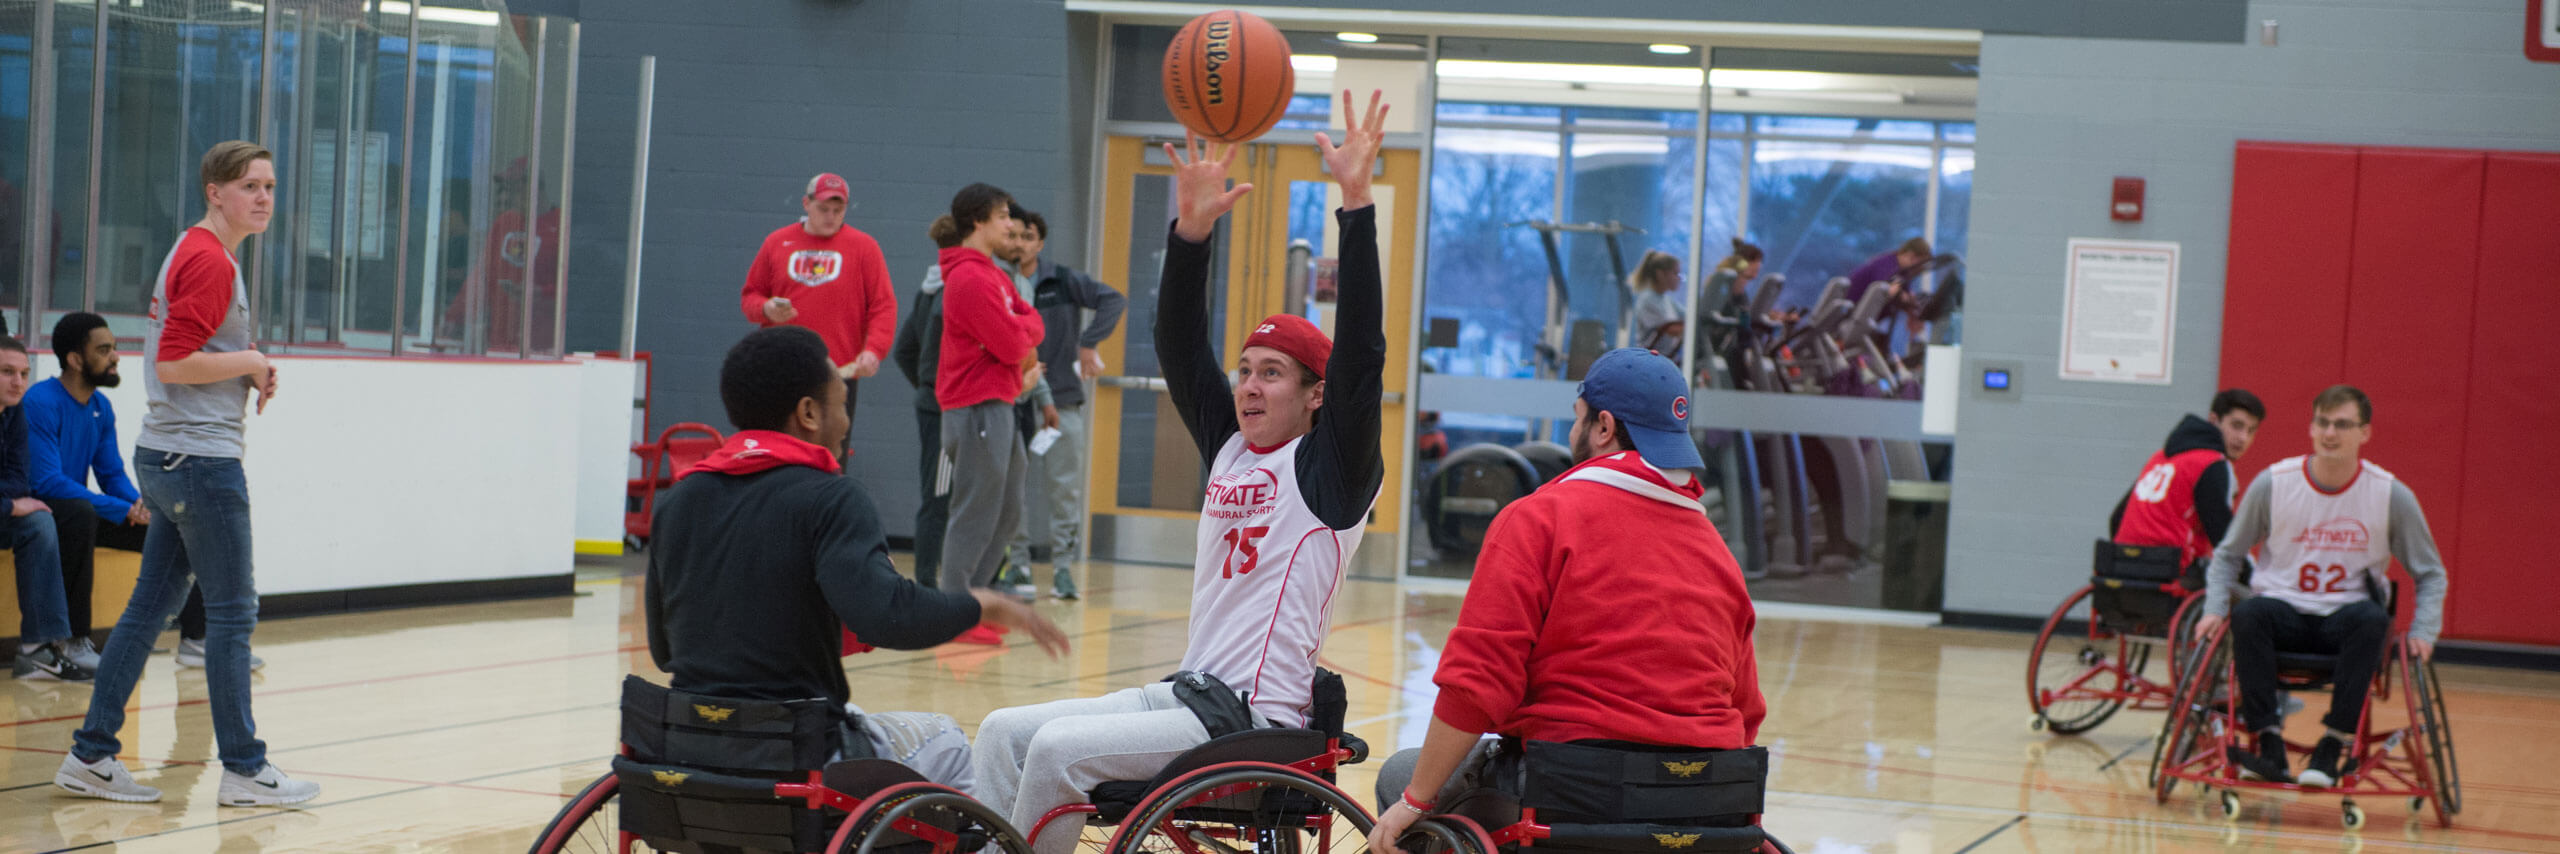 Students play basketball while in wheelchairs at Adaptapalooza.